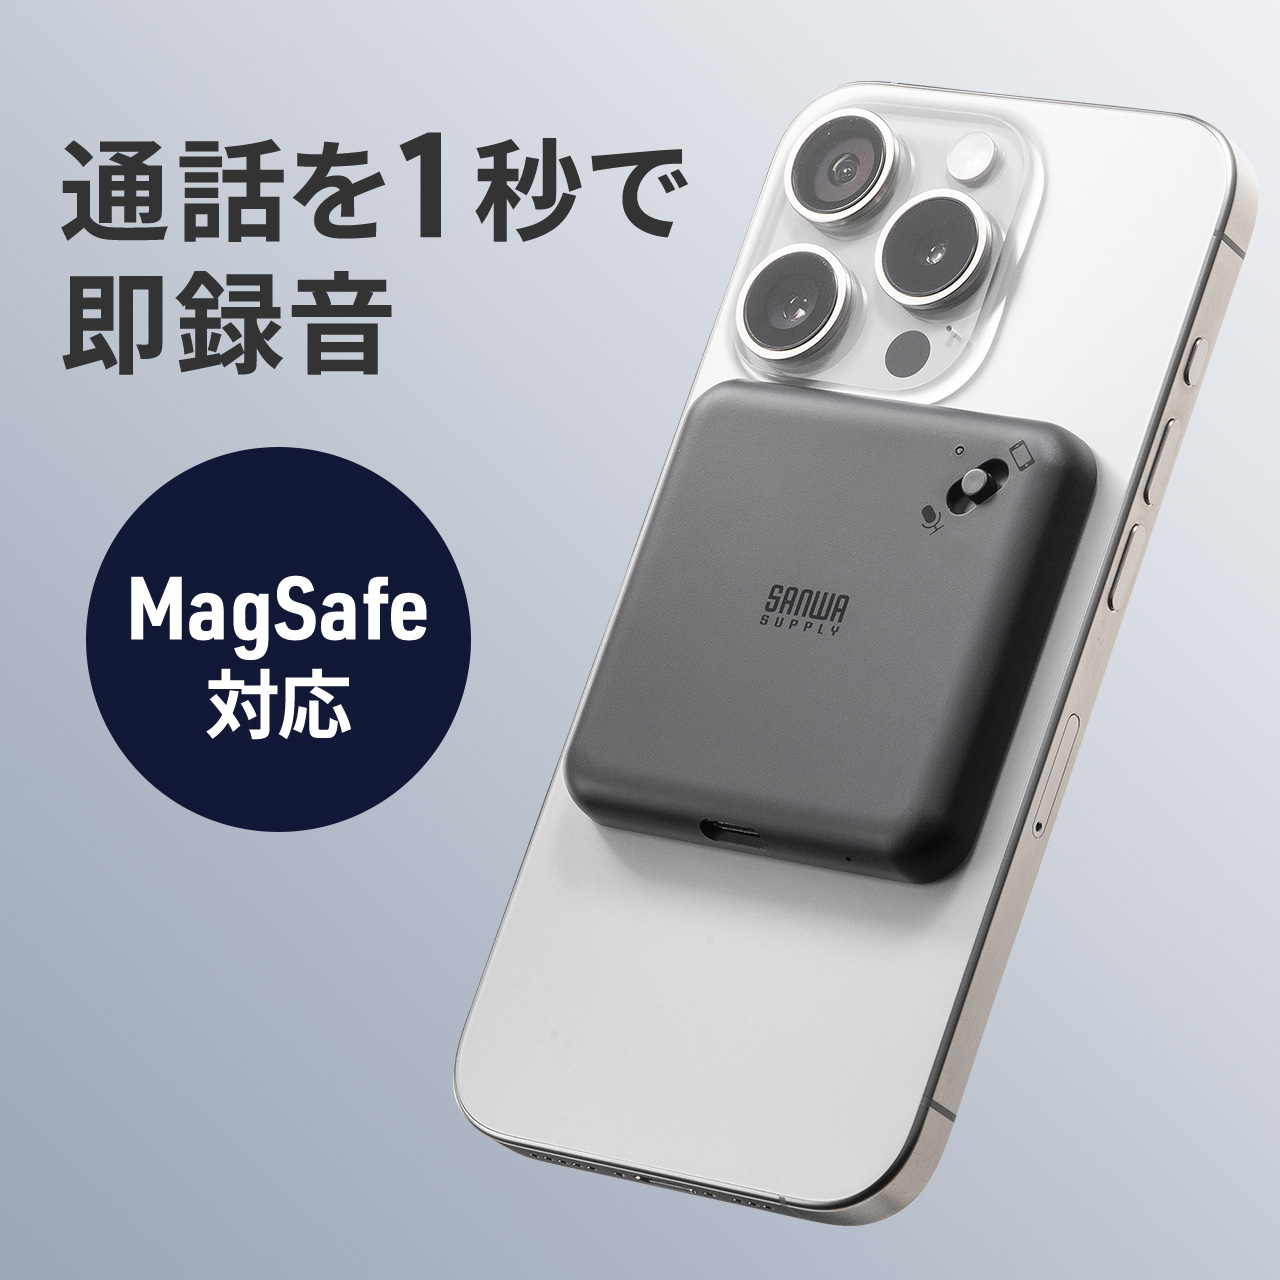 iPhone 通話 電話 録音 ボイスレコーダー ICレコーダー 最大190時間 16GB 大容量 メモリ内蔵 MagSafe マグネット取付 Android スマホ LINE 対応 400-SCNICR3BK